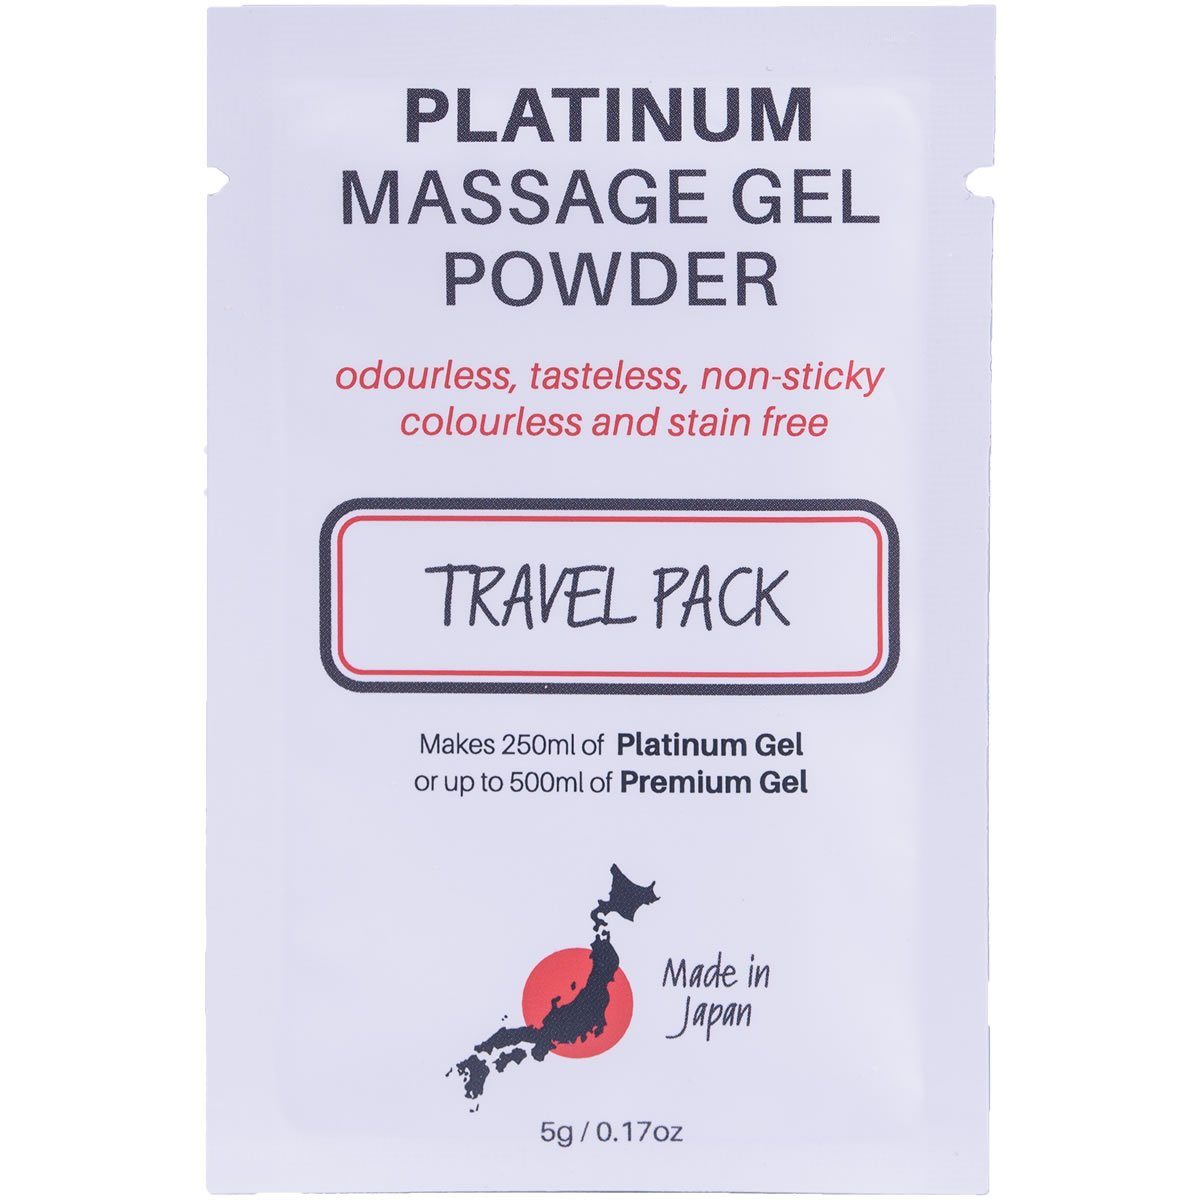 Made in Japan Gleit- und Massagegel Nuru Massage Gel Powder - Platinum,  TRAVEL PACK, Sachet mit 5g, japanisches Massagegel-Pulver aus natürlichen